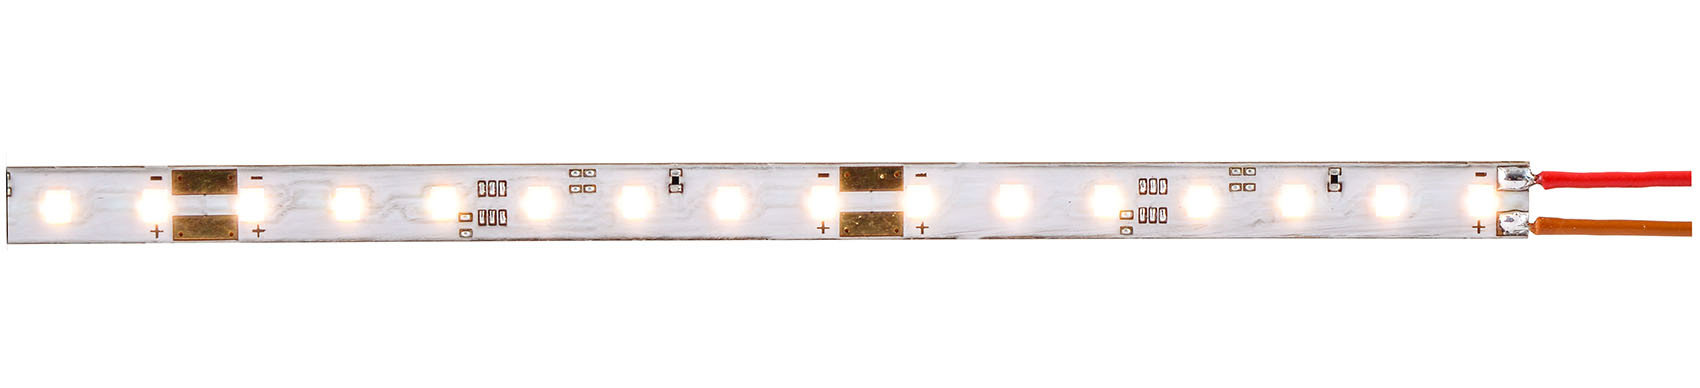 LED-Leuchtstreifen warmweiß 2,3mm breit, 2000K, superschmal, geeignet zur filigranen Beleuchtung von Reklameschildern, Tankstellendächern, usw.